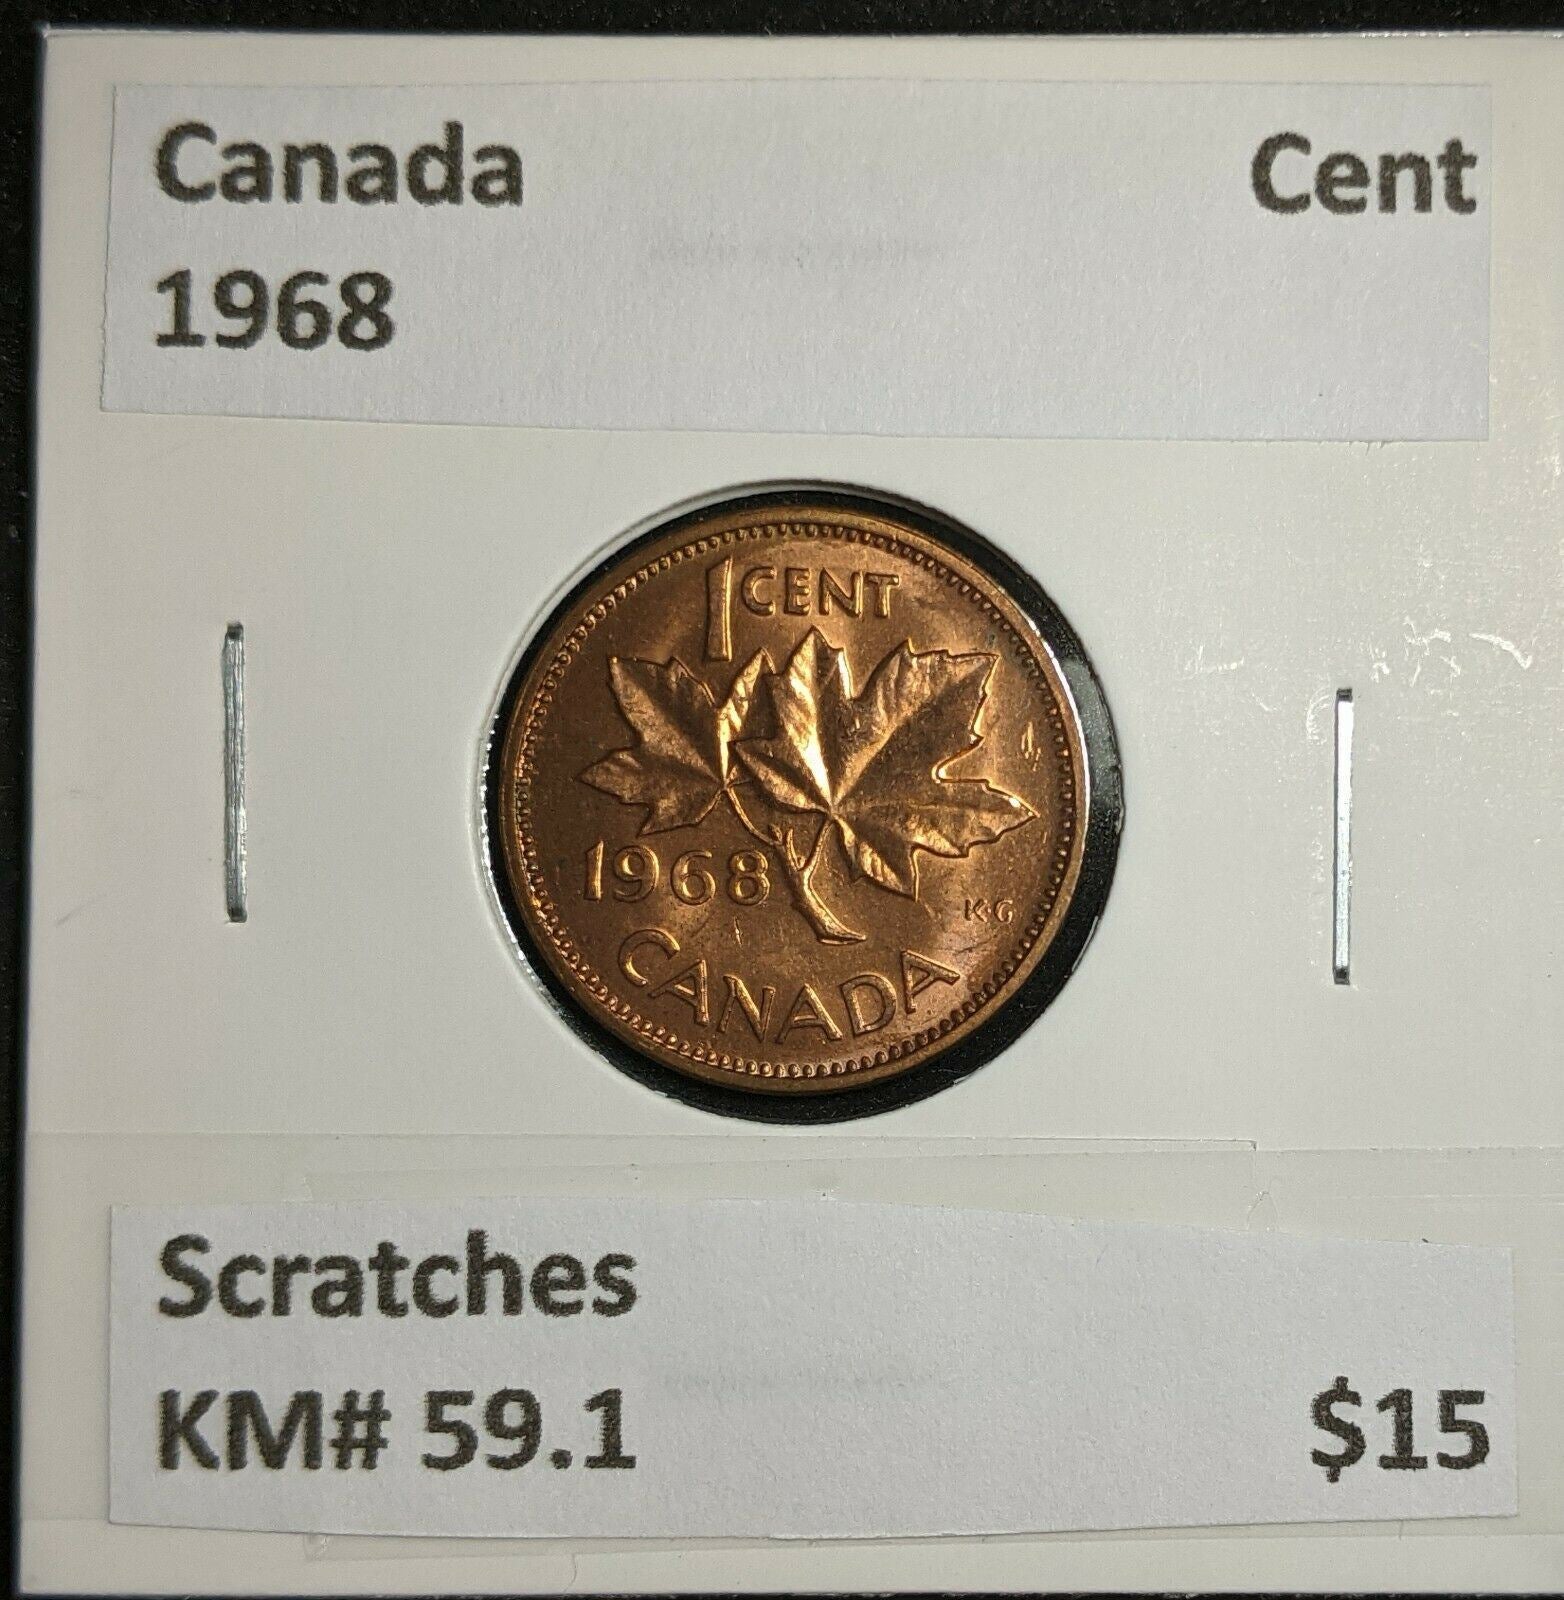 Canada 1968 Cent KM# 59.1 Scratches #934